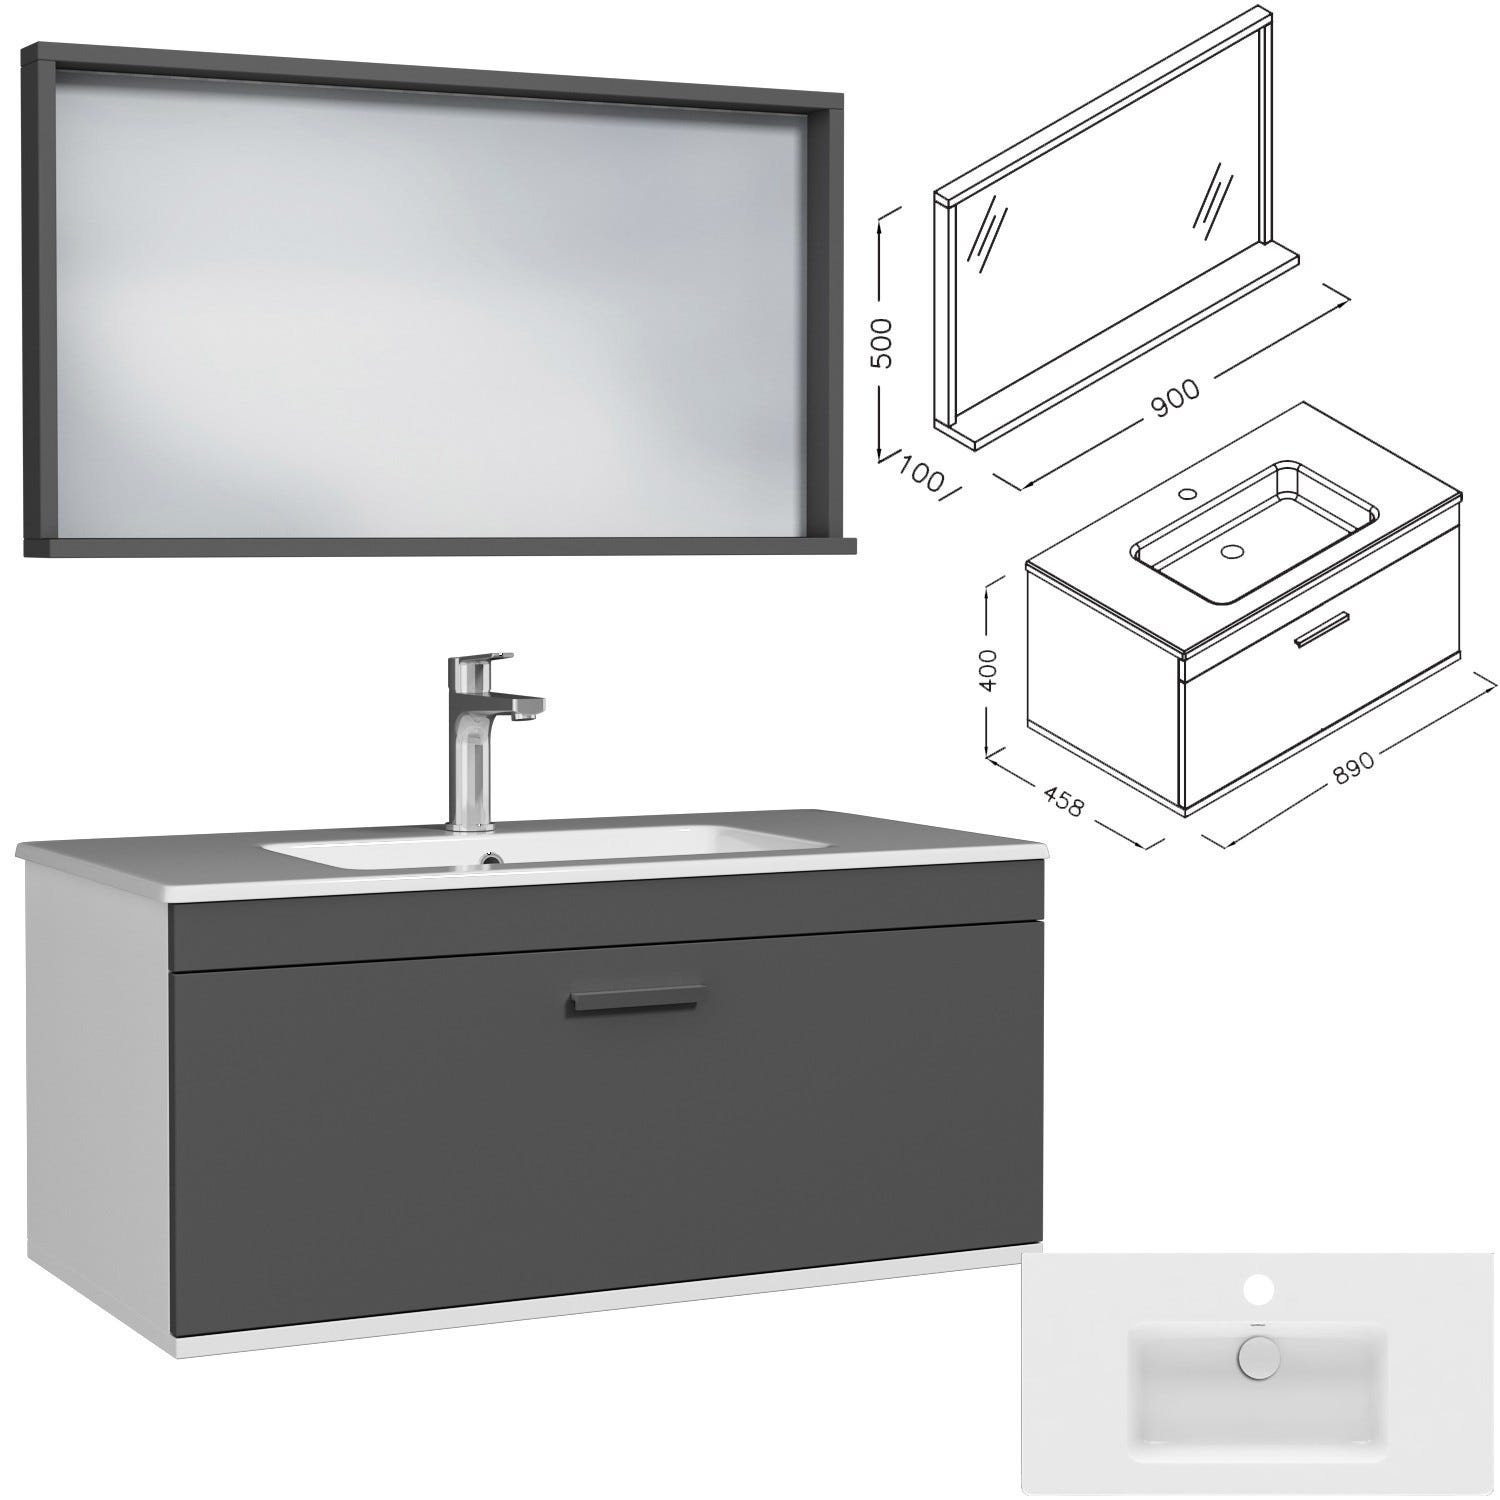 RUBITE Meuble salle de bain simple vasque 1 tiroir gris anthracite largeur 90 cm + miroir cadre 2